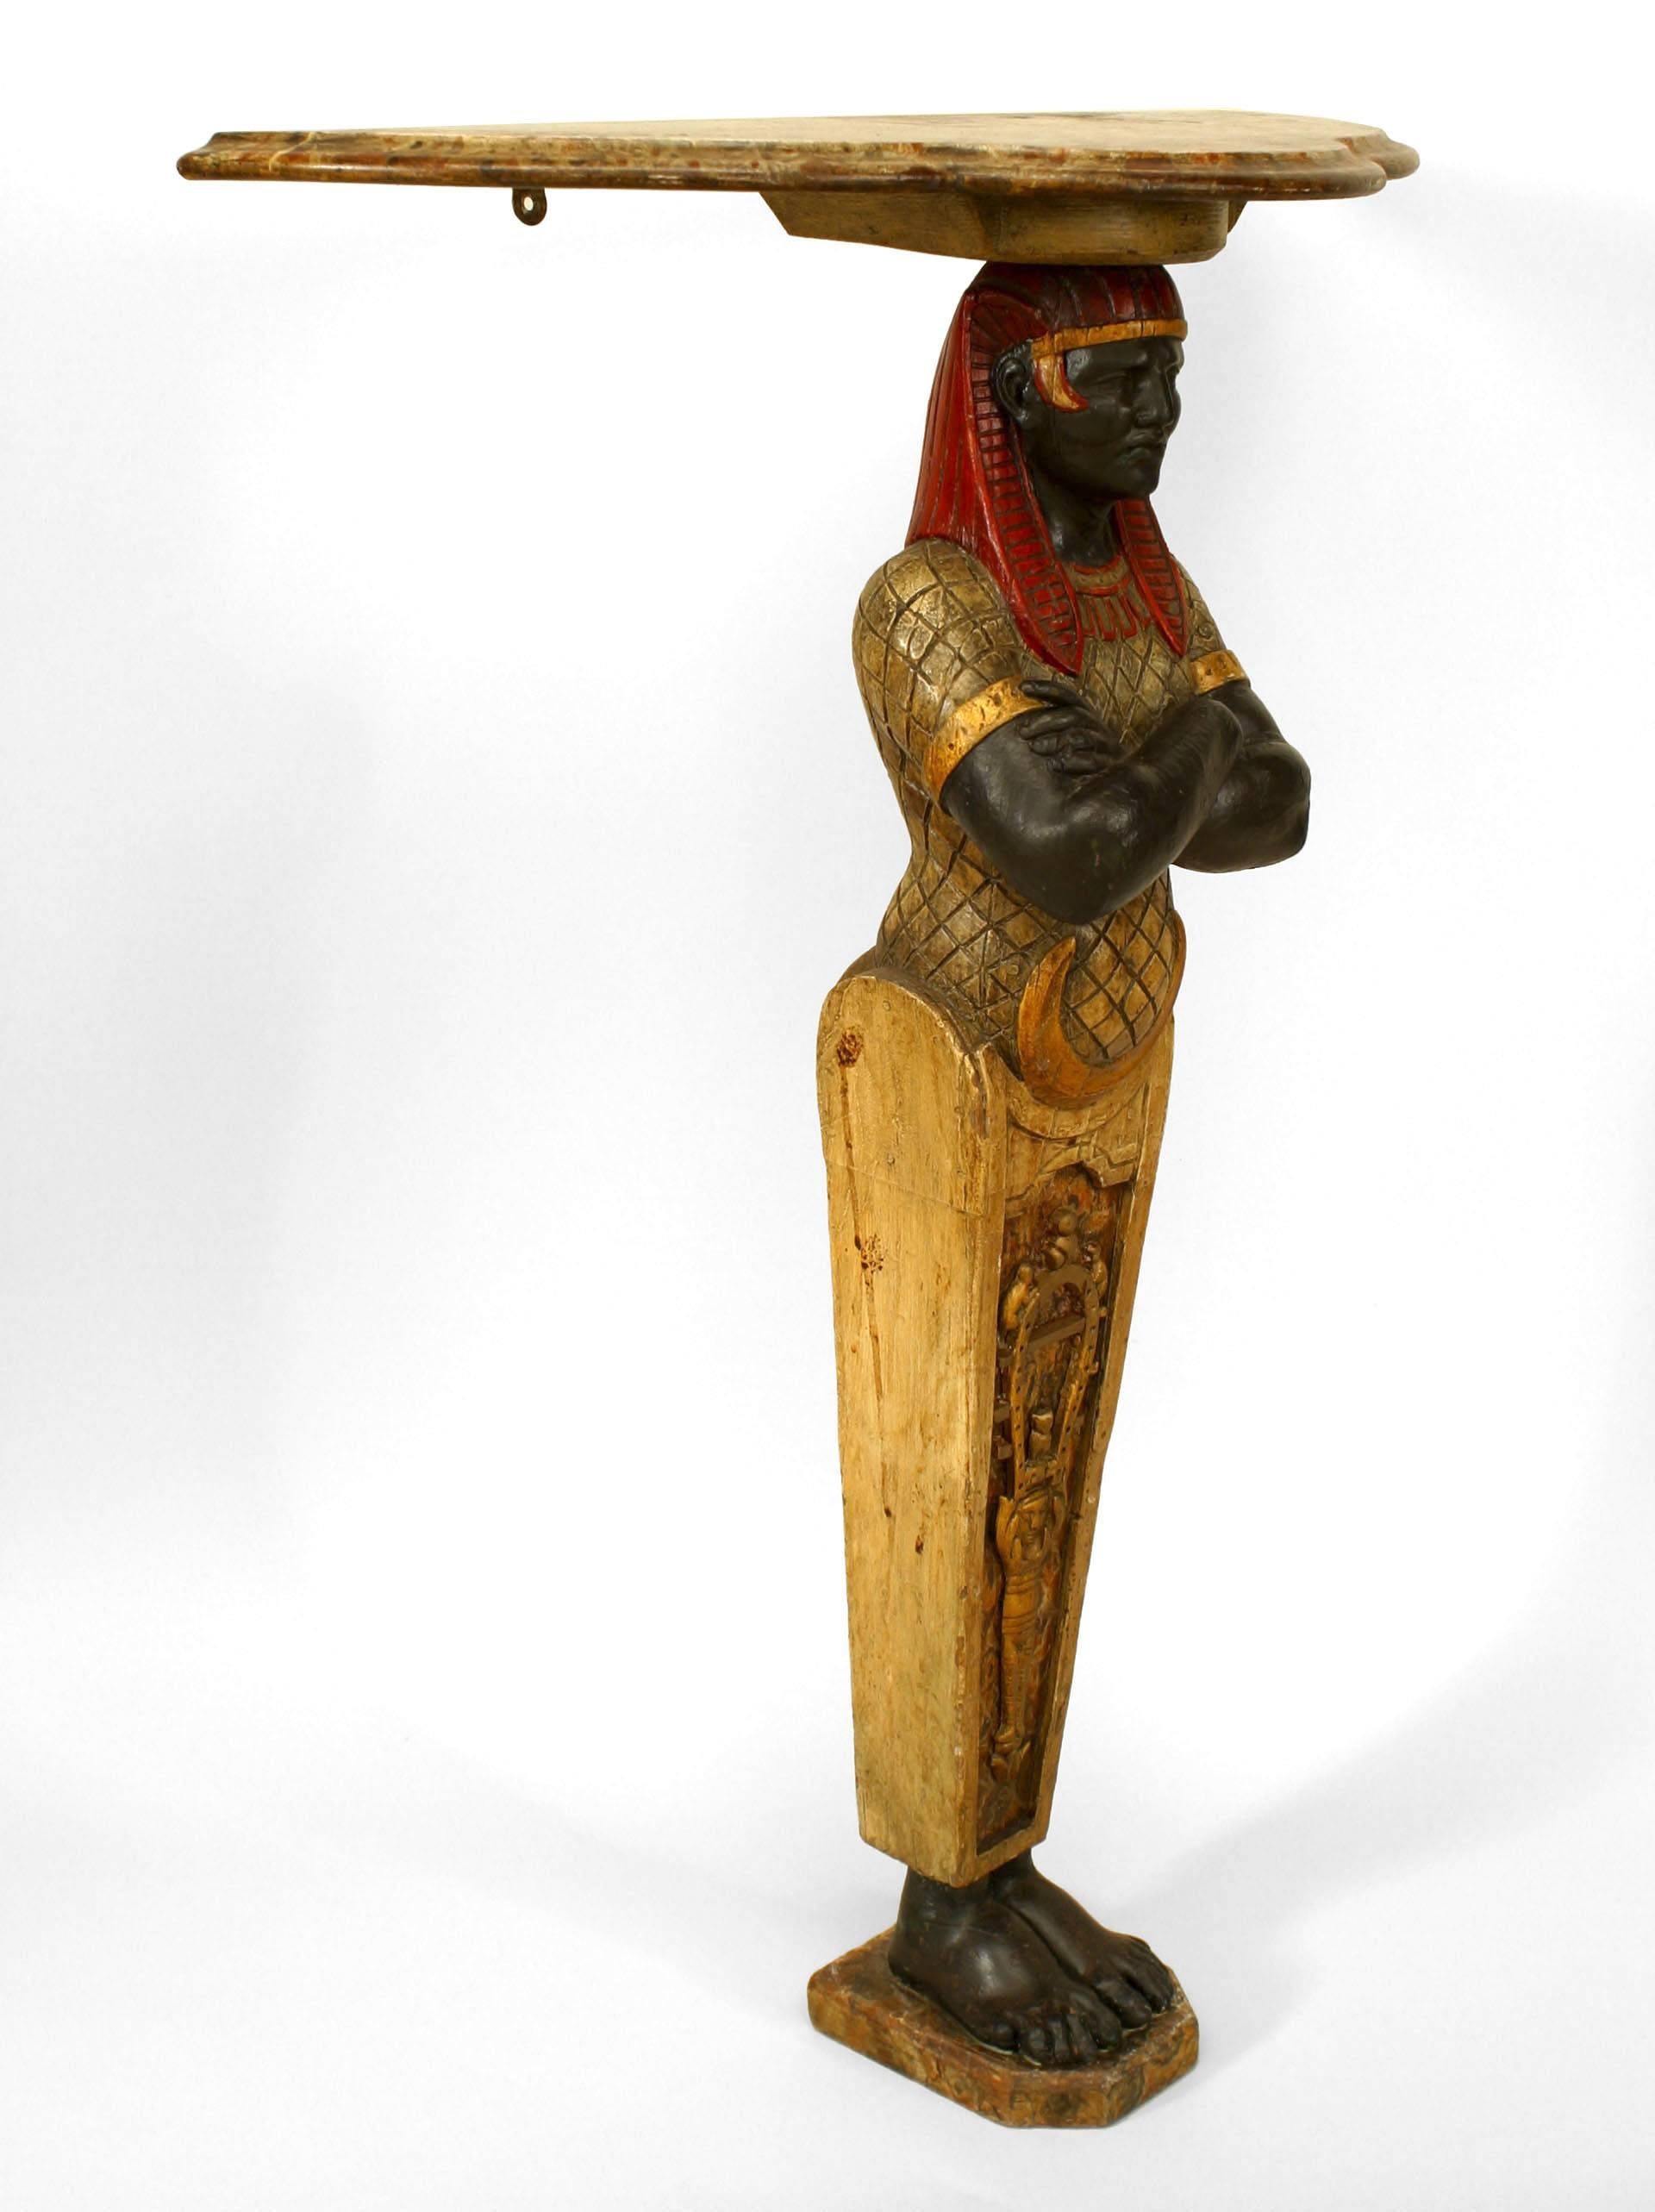 Paire de consoles de style égyptien (époque victorienne anglaise) peintes et décorées, avec base à figures égyptiennes et plateau en faux marbre façonné
